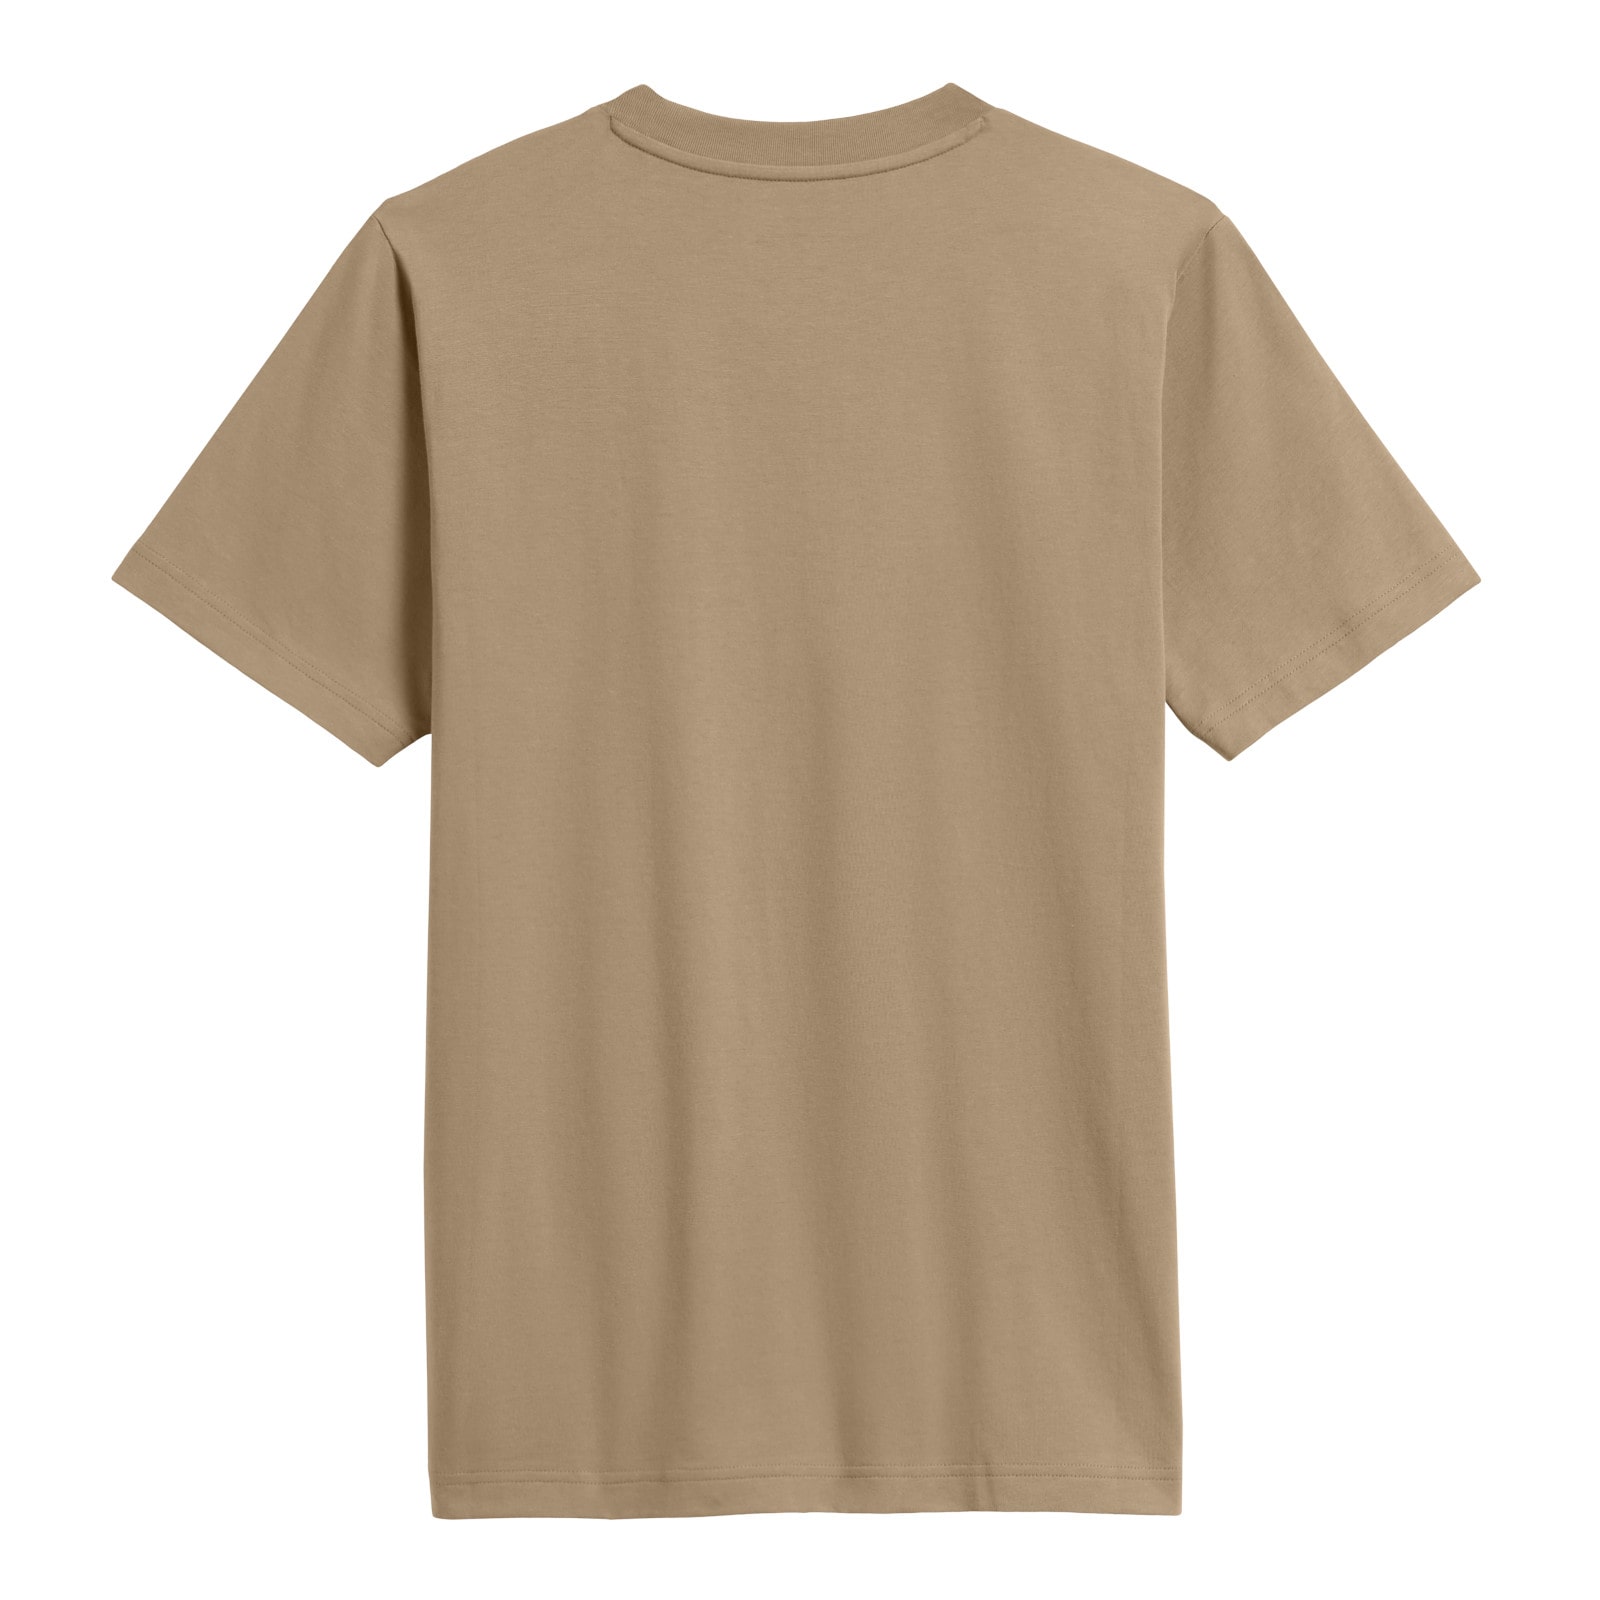 New Balance 610 Relaxed Short Sleeve T-Shirt